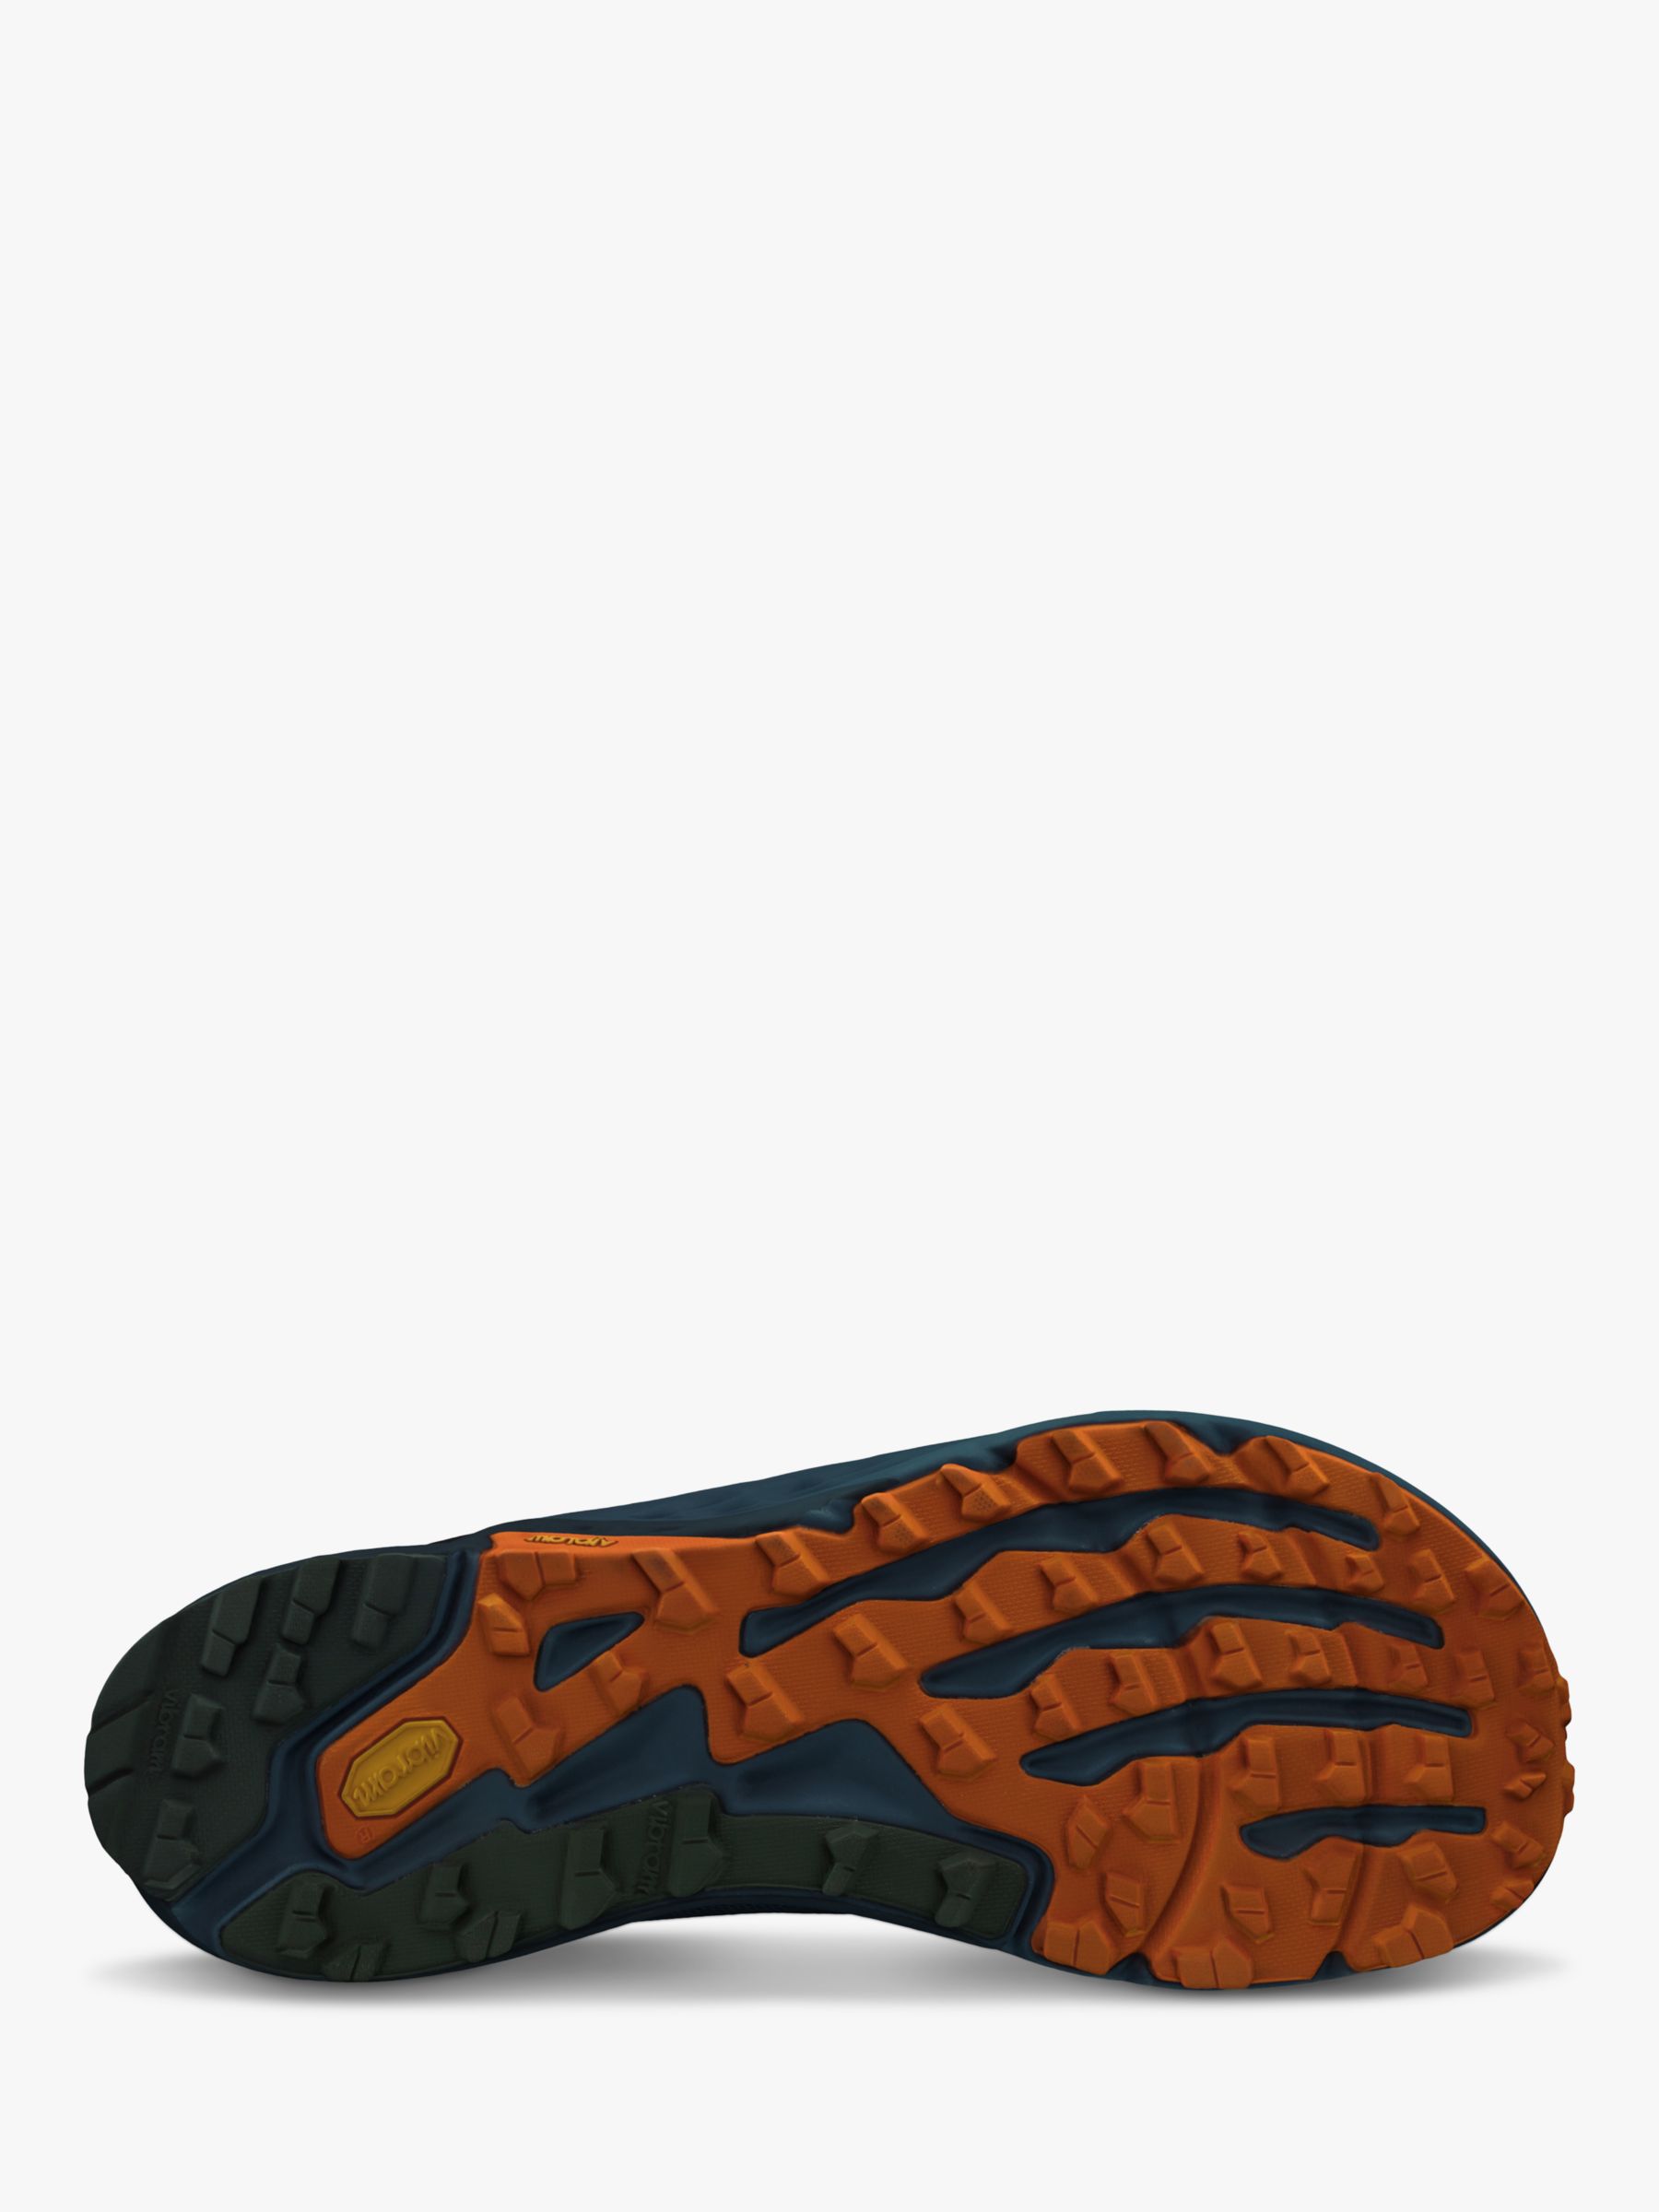 Buy Altra Timp 5 Men's Running Shoes, Blue/Orange Online at johnlewis.com